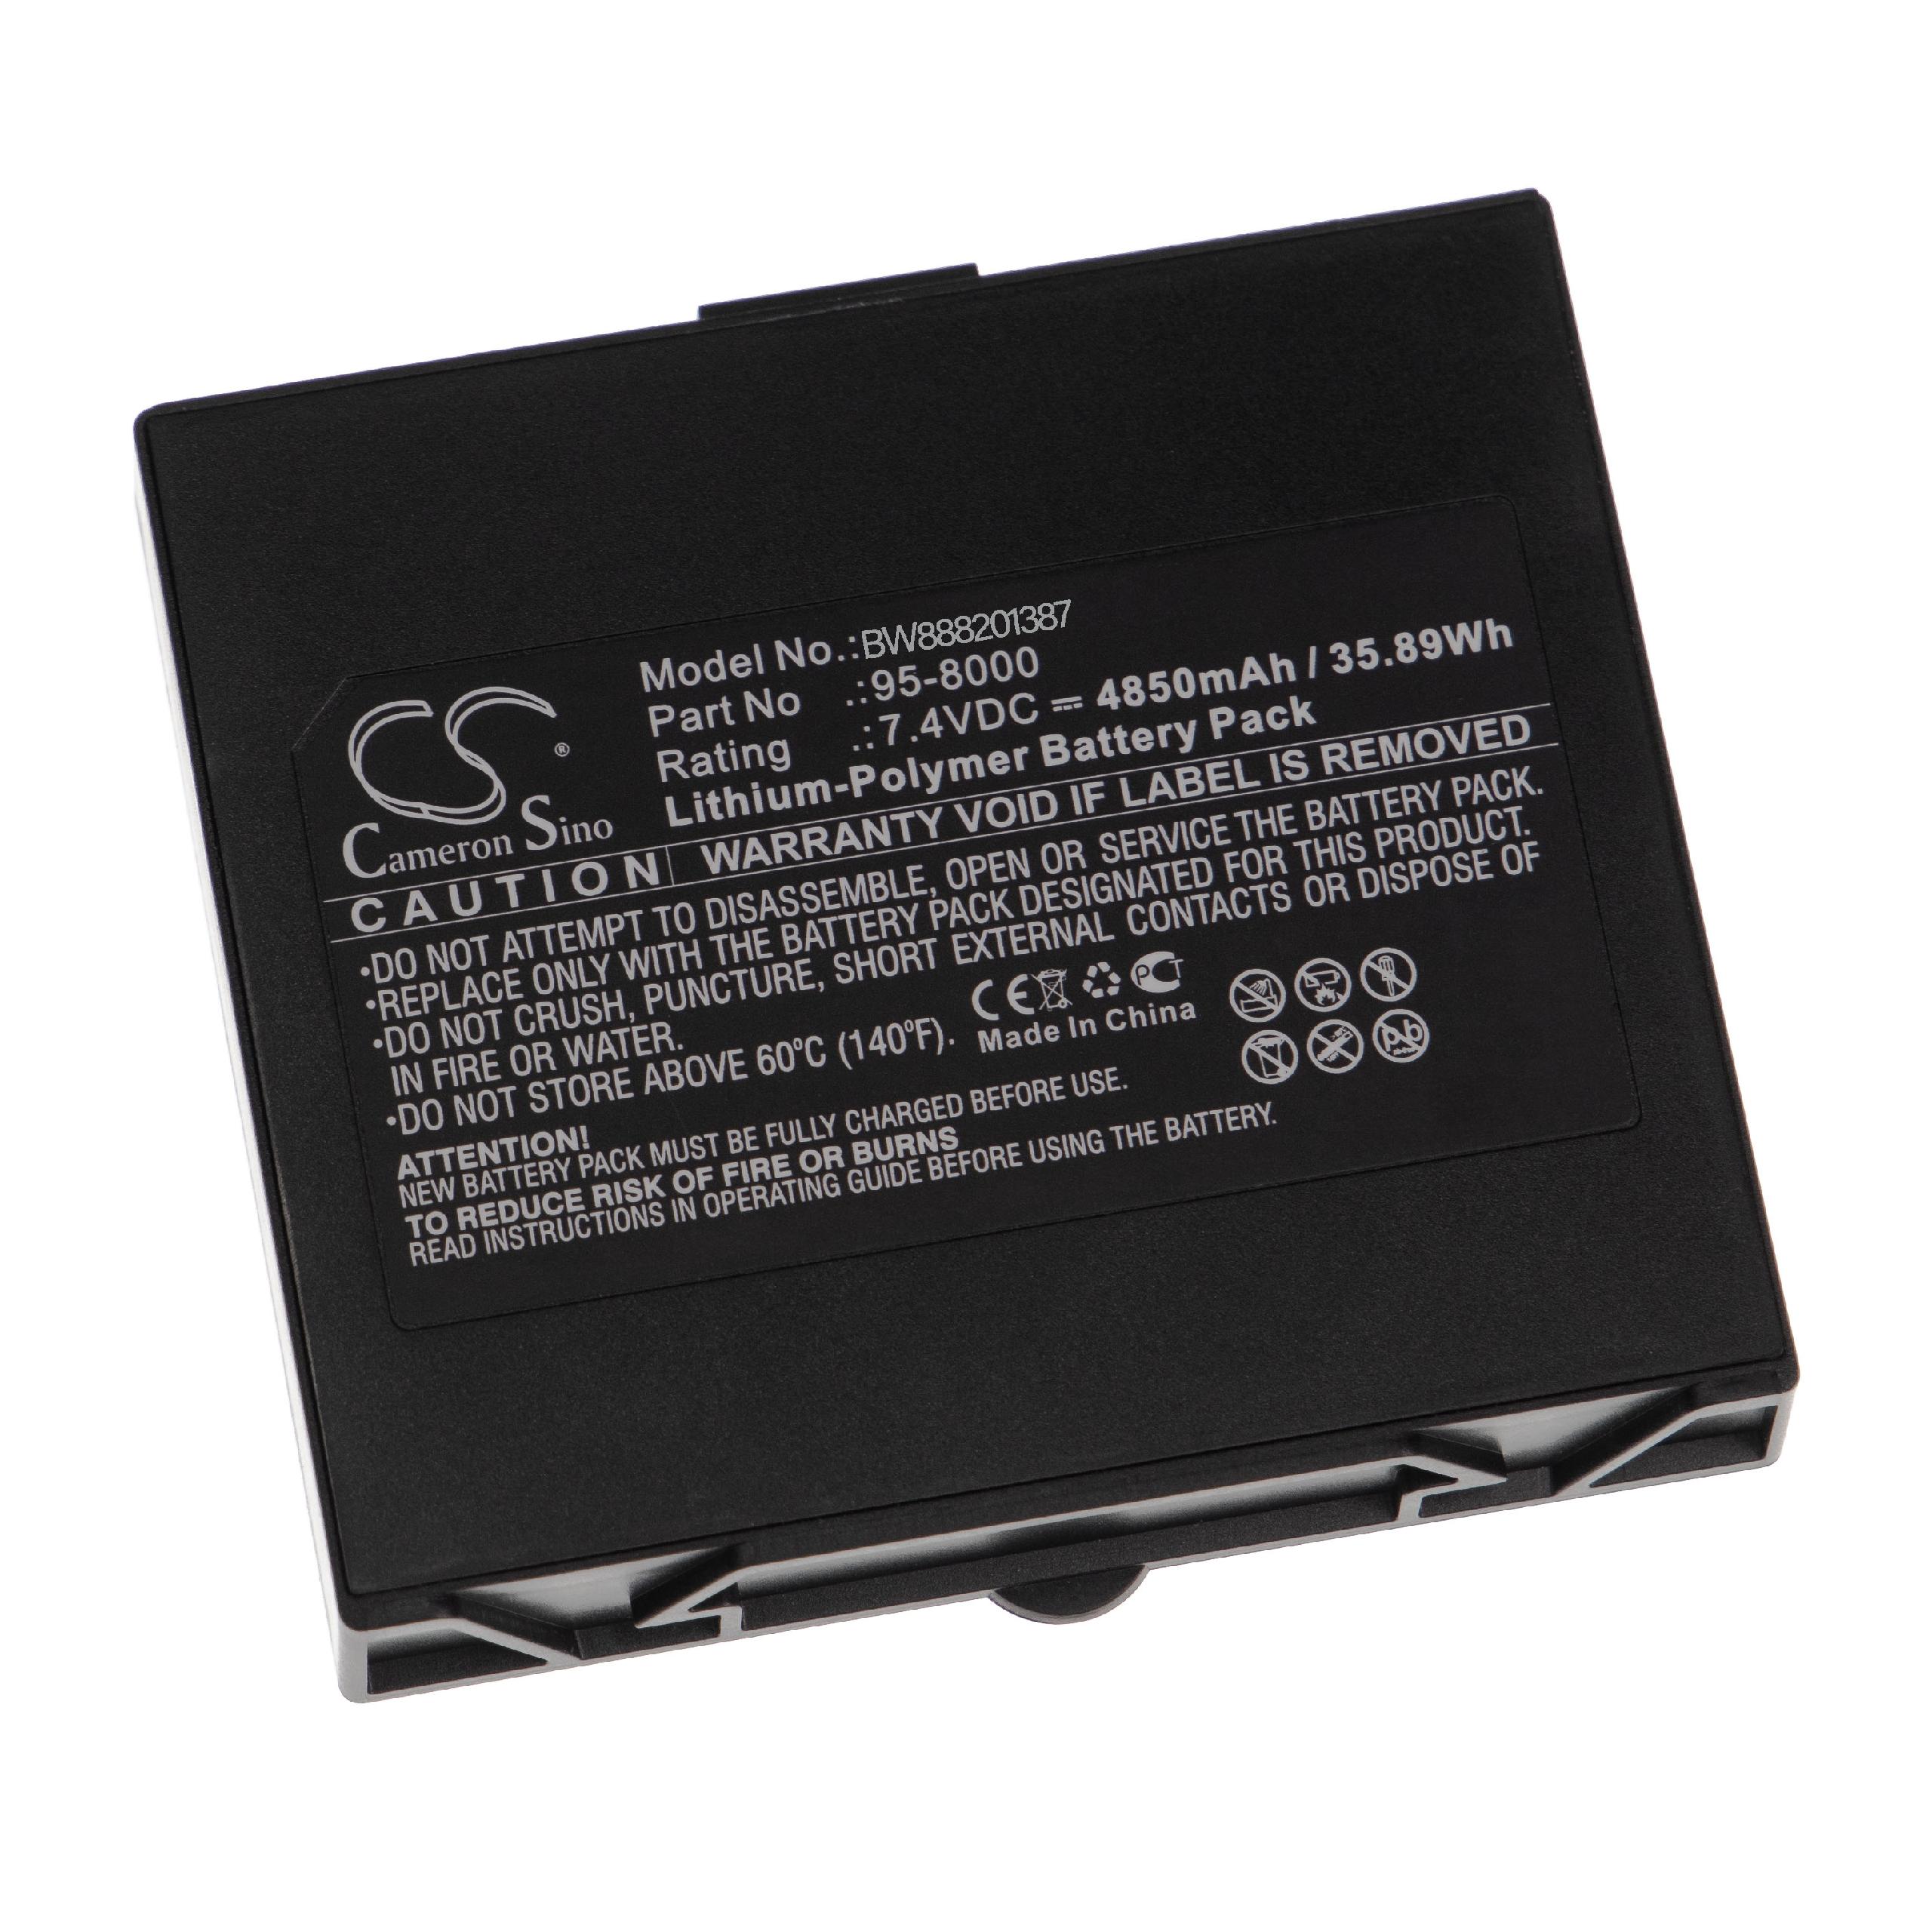  Battery replaces HumanWare 95-8000 for HumanWareLoudspeaker - Li-polymer 4850 mAh